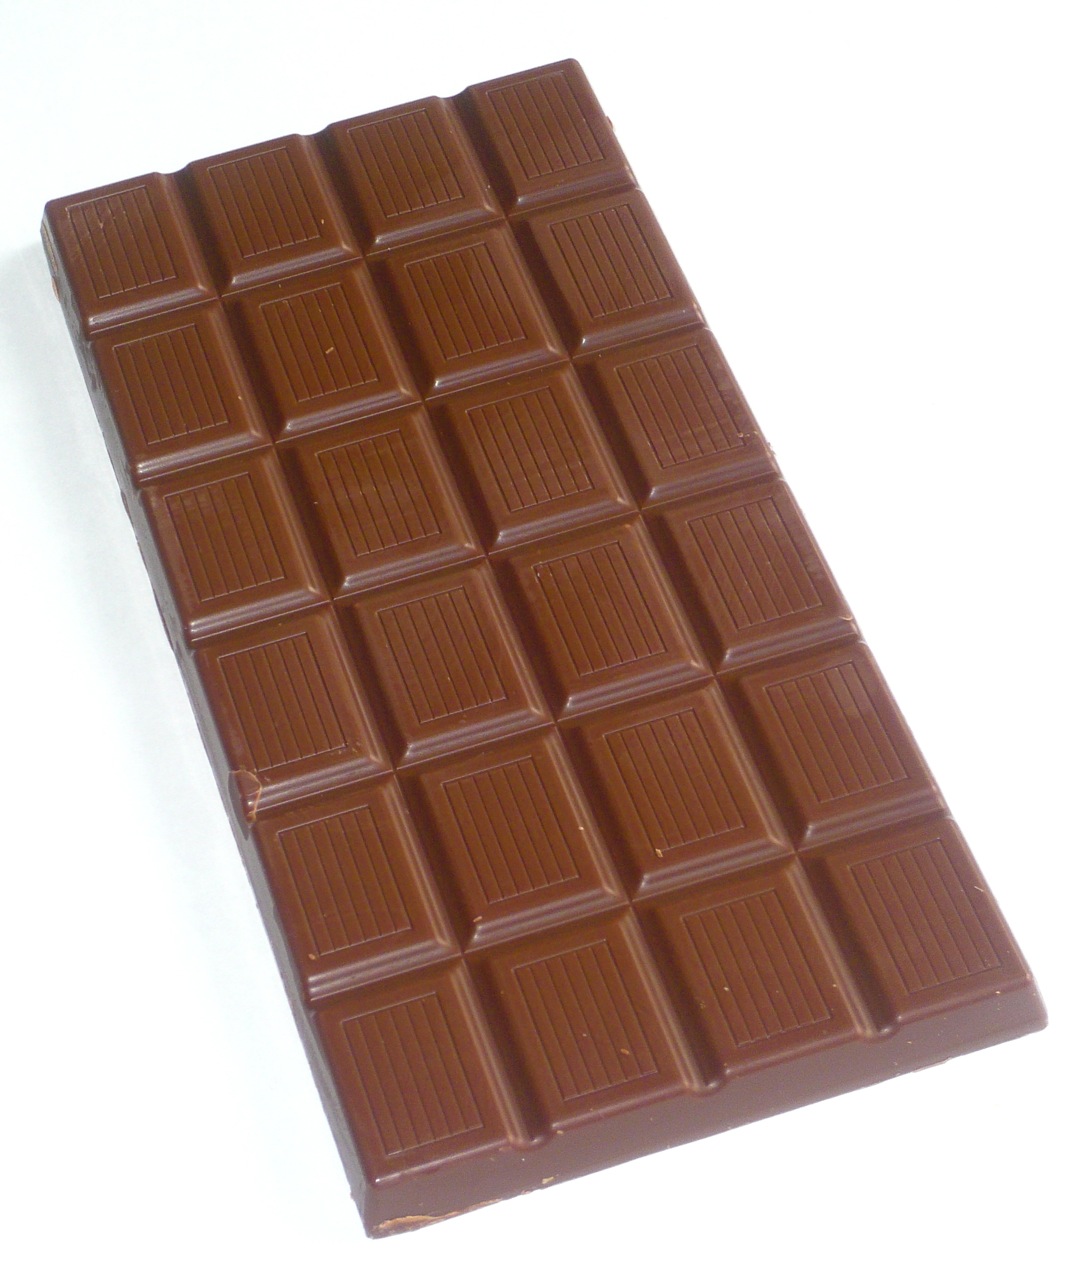 Gansis kalau makan cokelat dikunyah atau diemut?